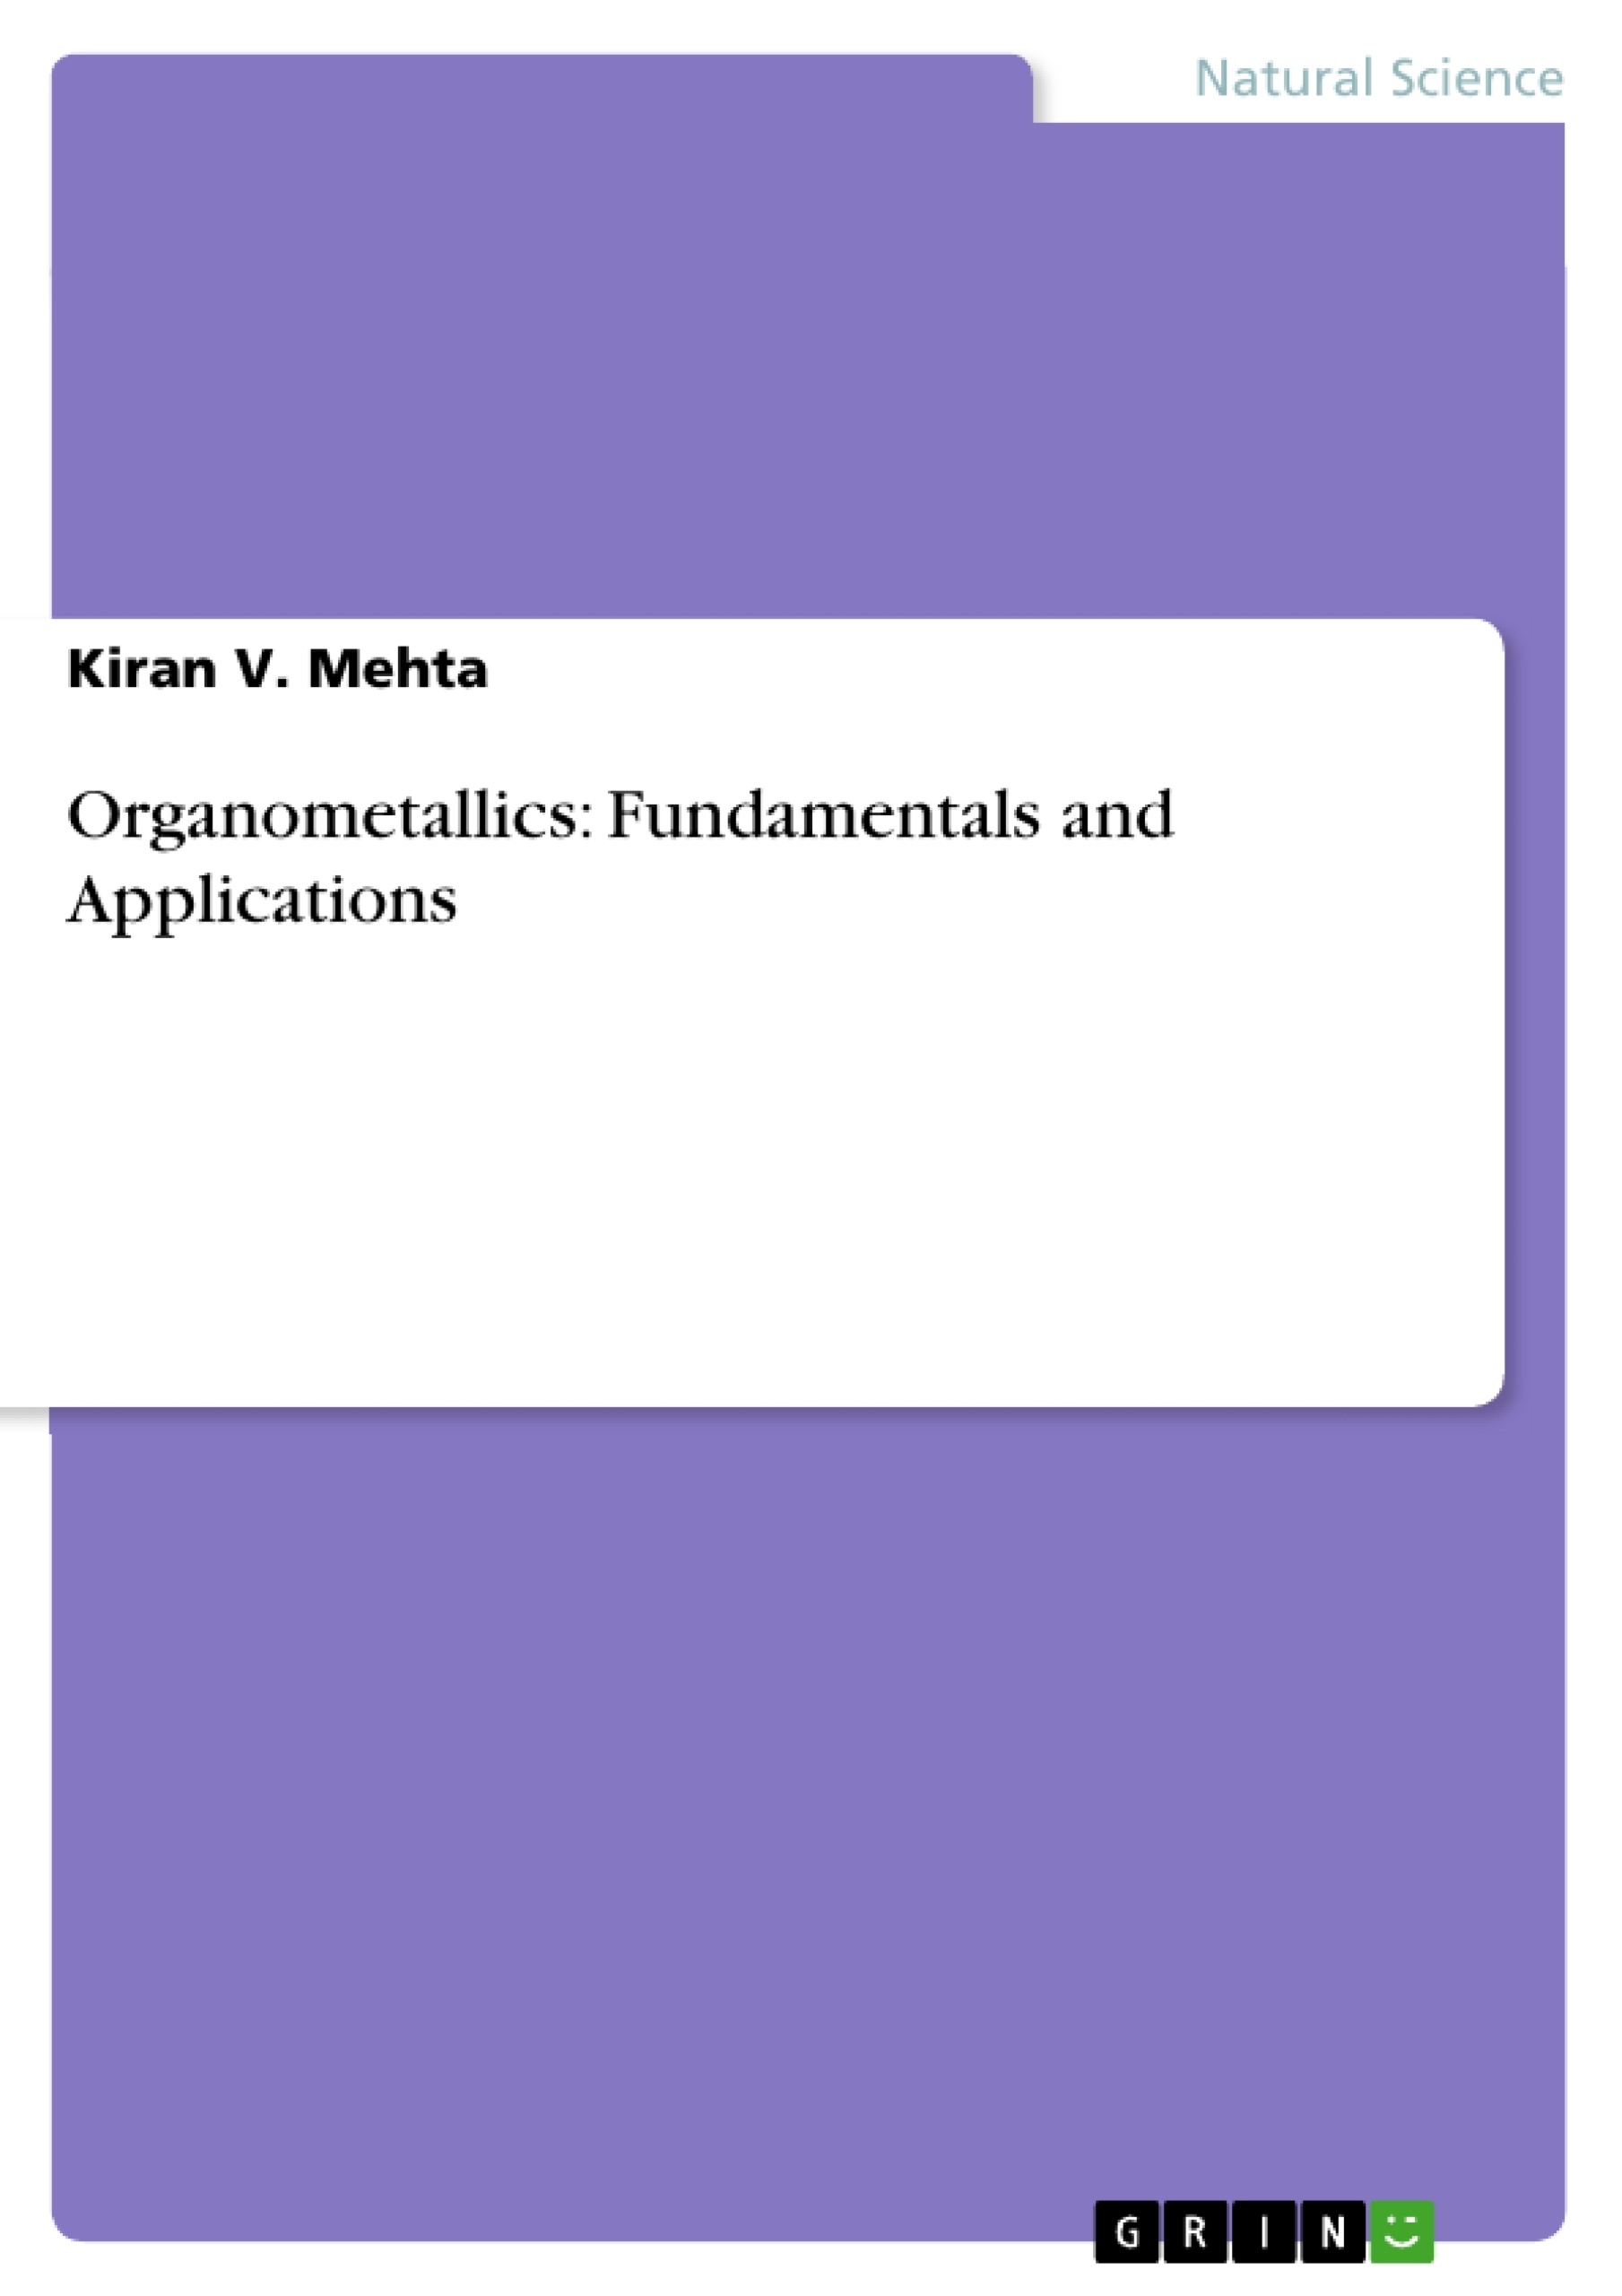 Title: Organometallics: Fundamentals and Applications